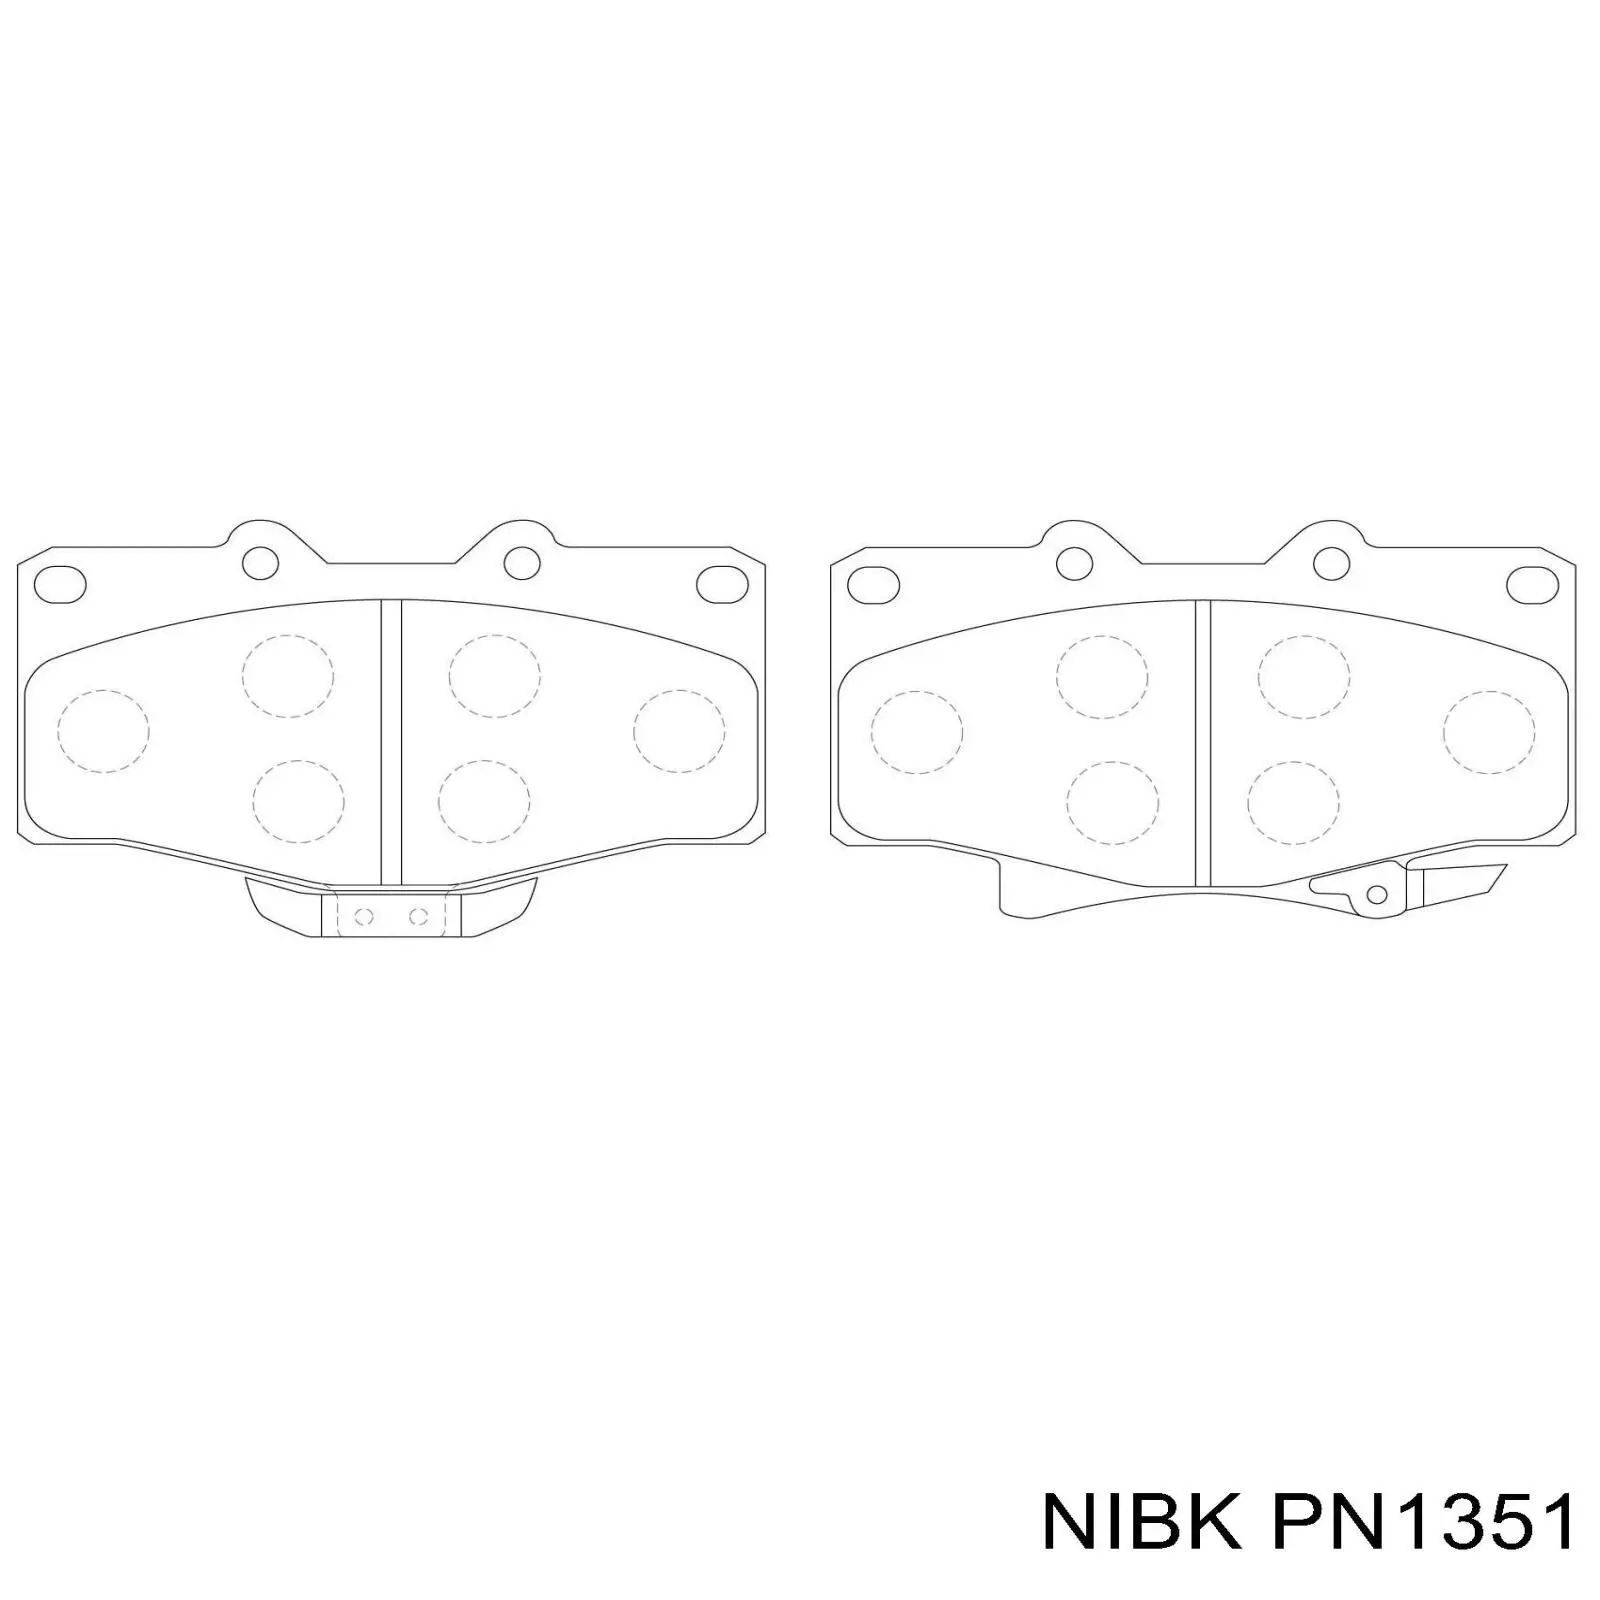 PN1351 Nibk pastillas de freno delanteras